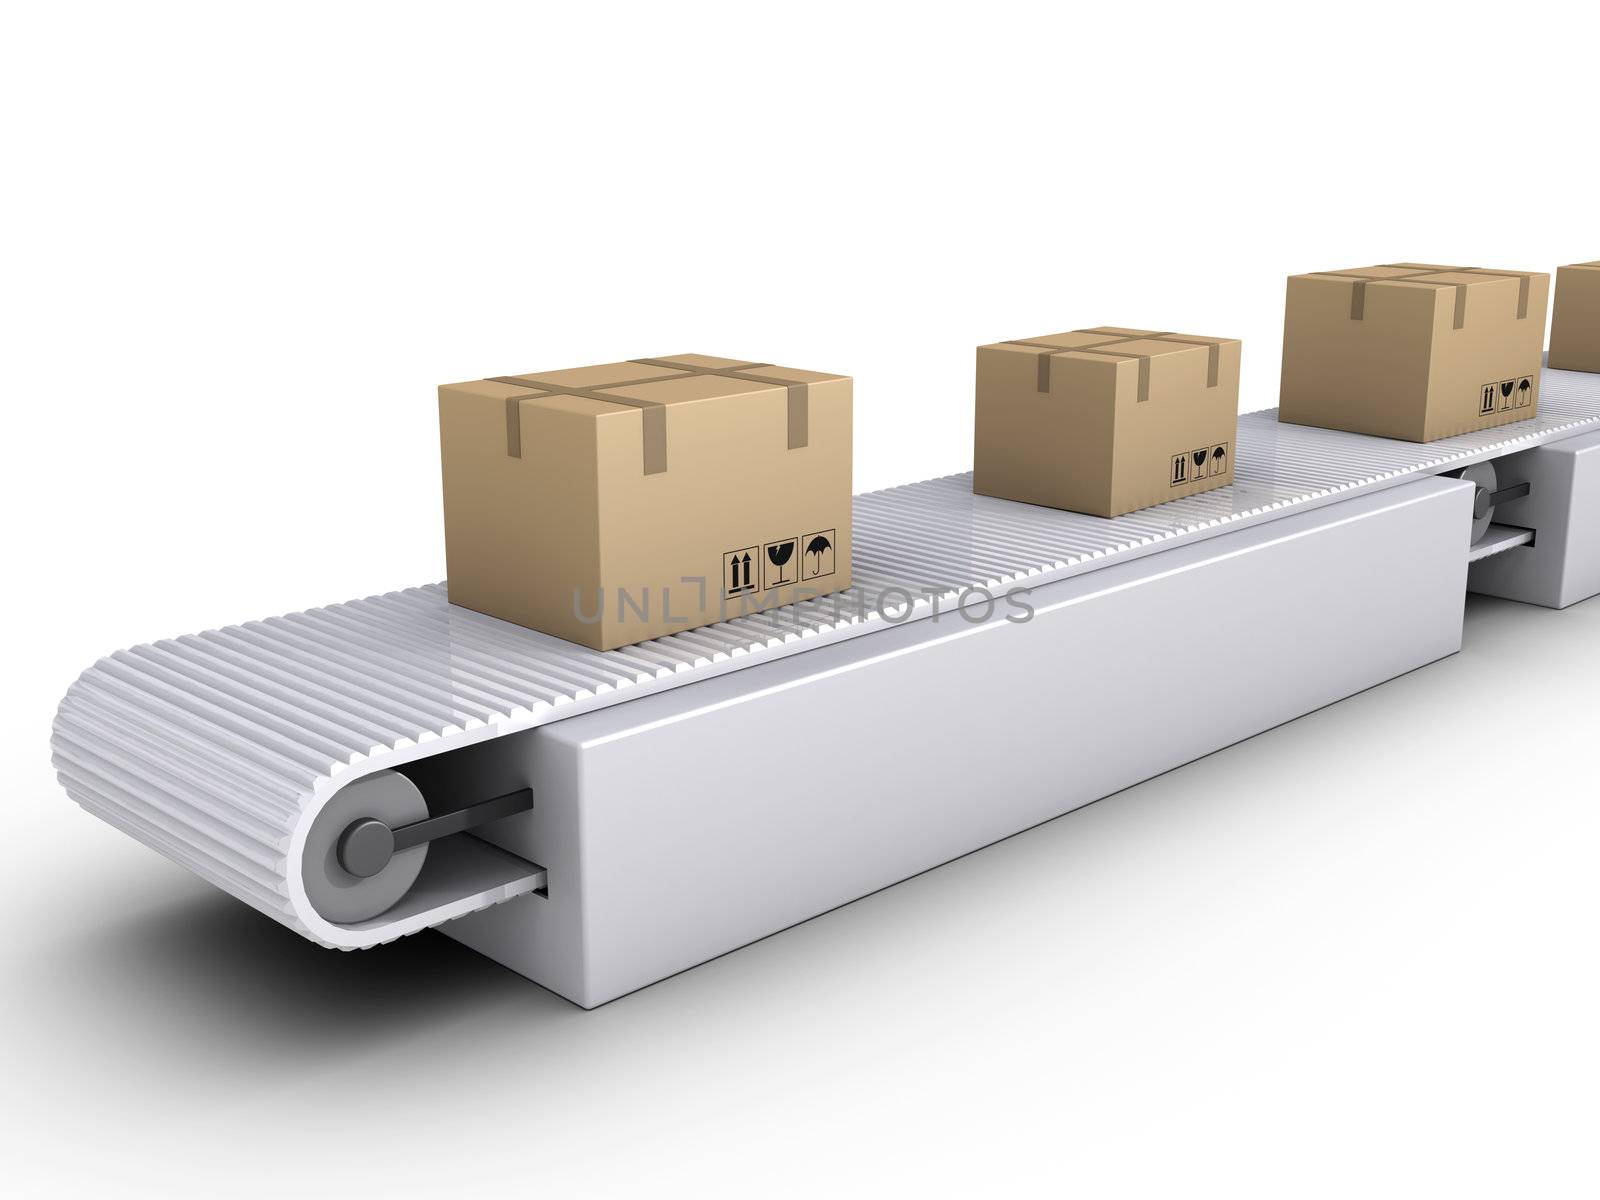 3d carton boxes on conveyor in a warehouse